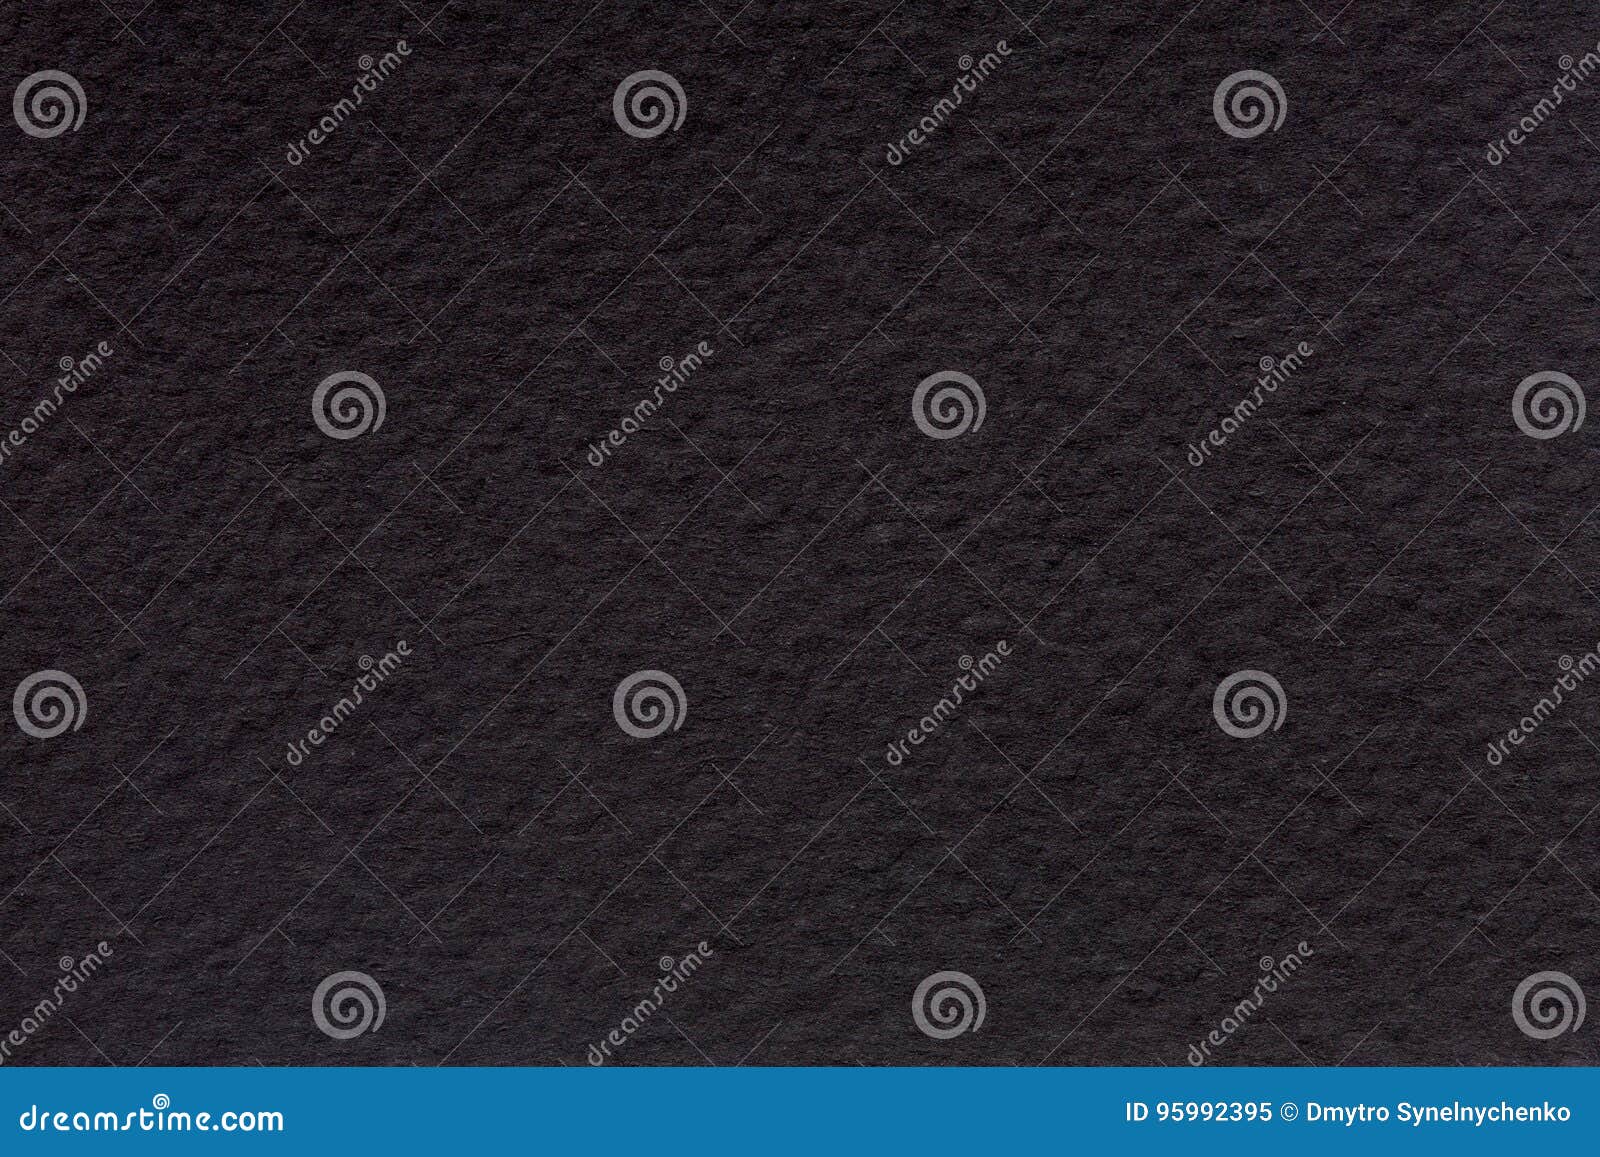 Black canvas background. stock image. Image of making - 95992395